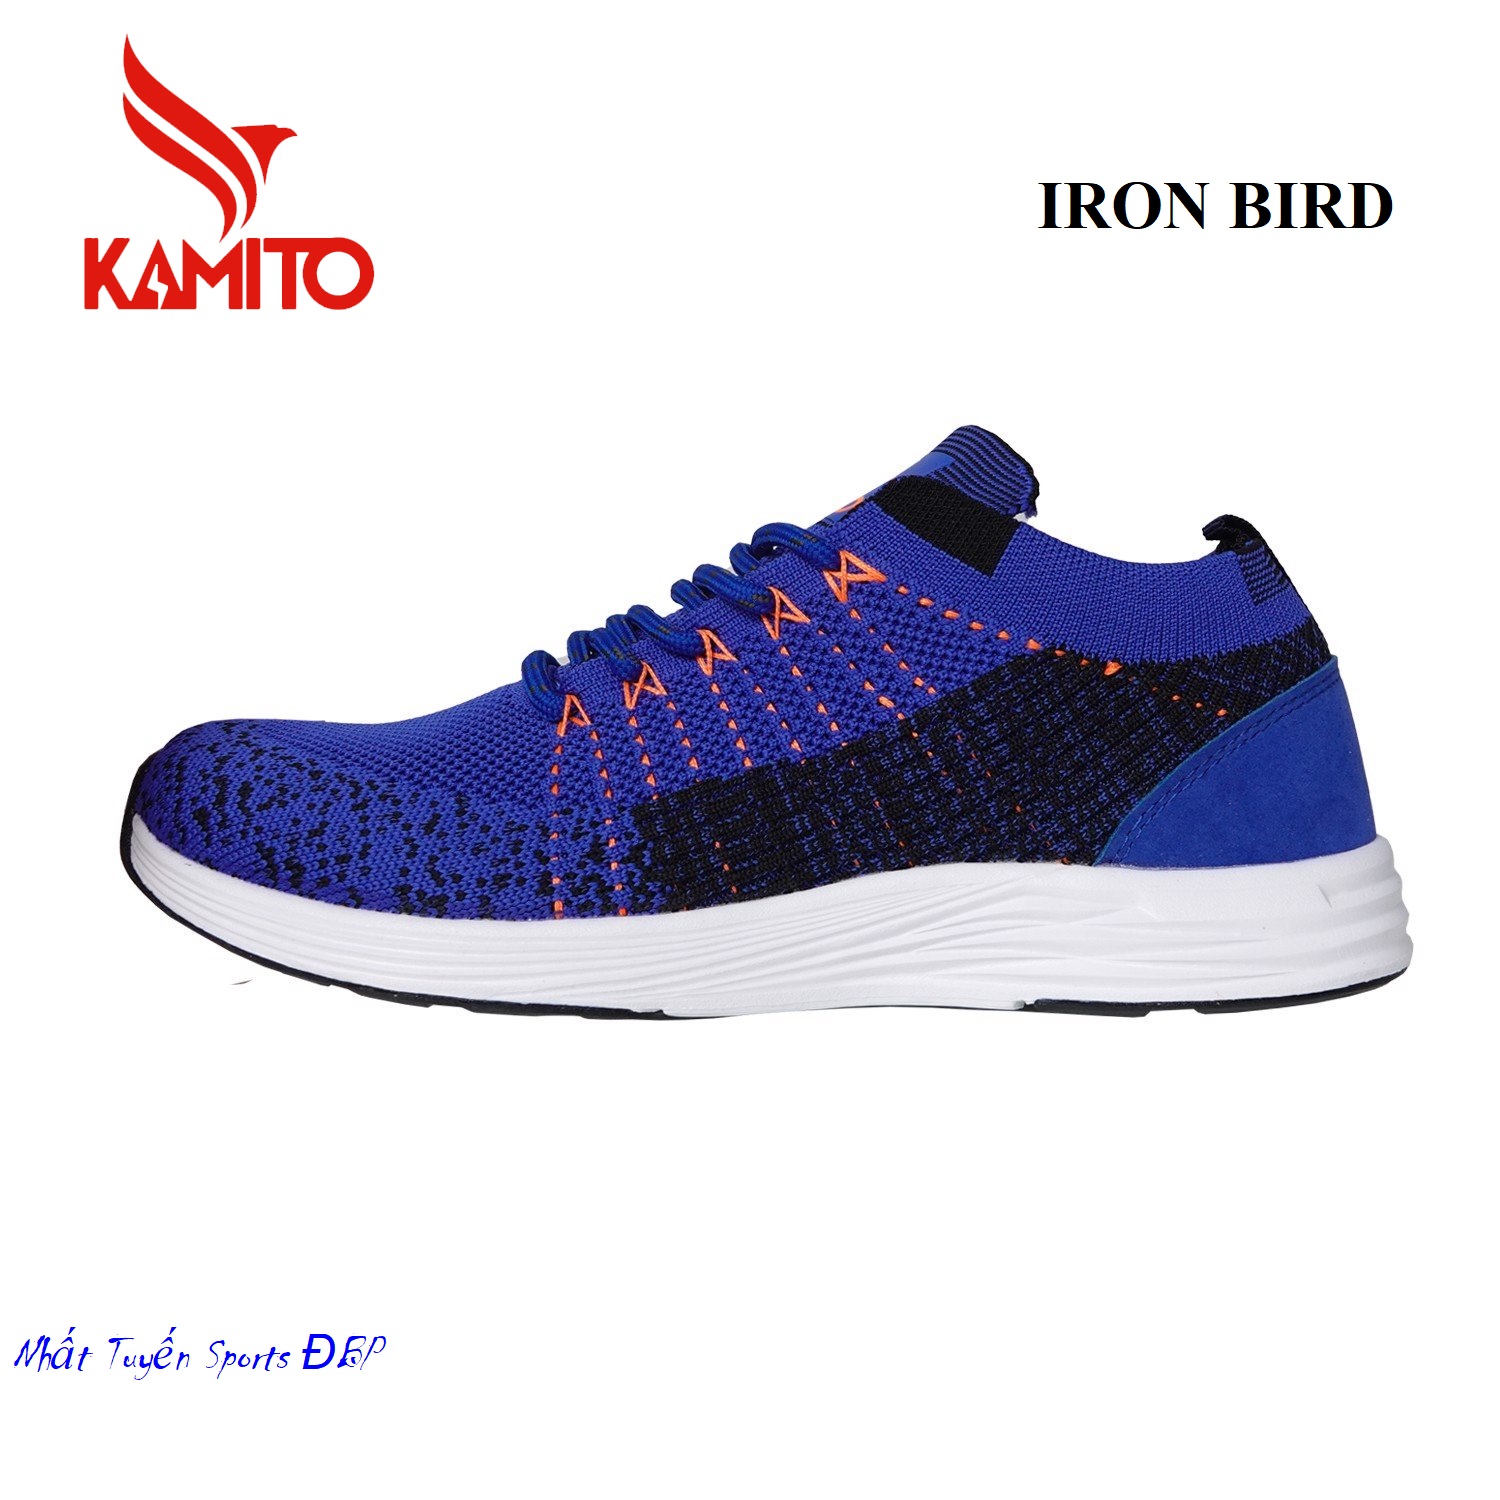 Giày thể thao Sneaker Kamito Iron Bird (chính hãng)